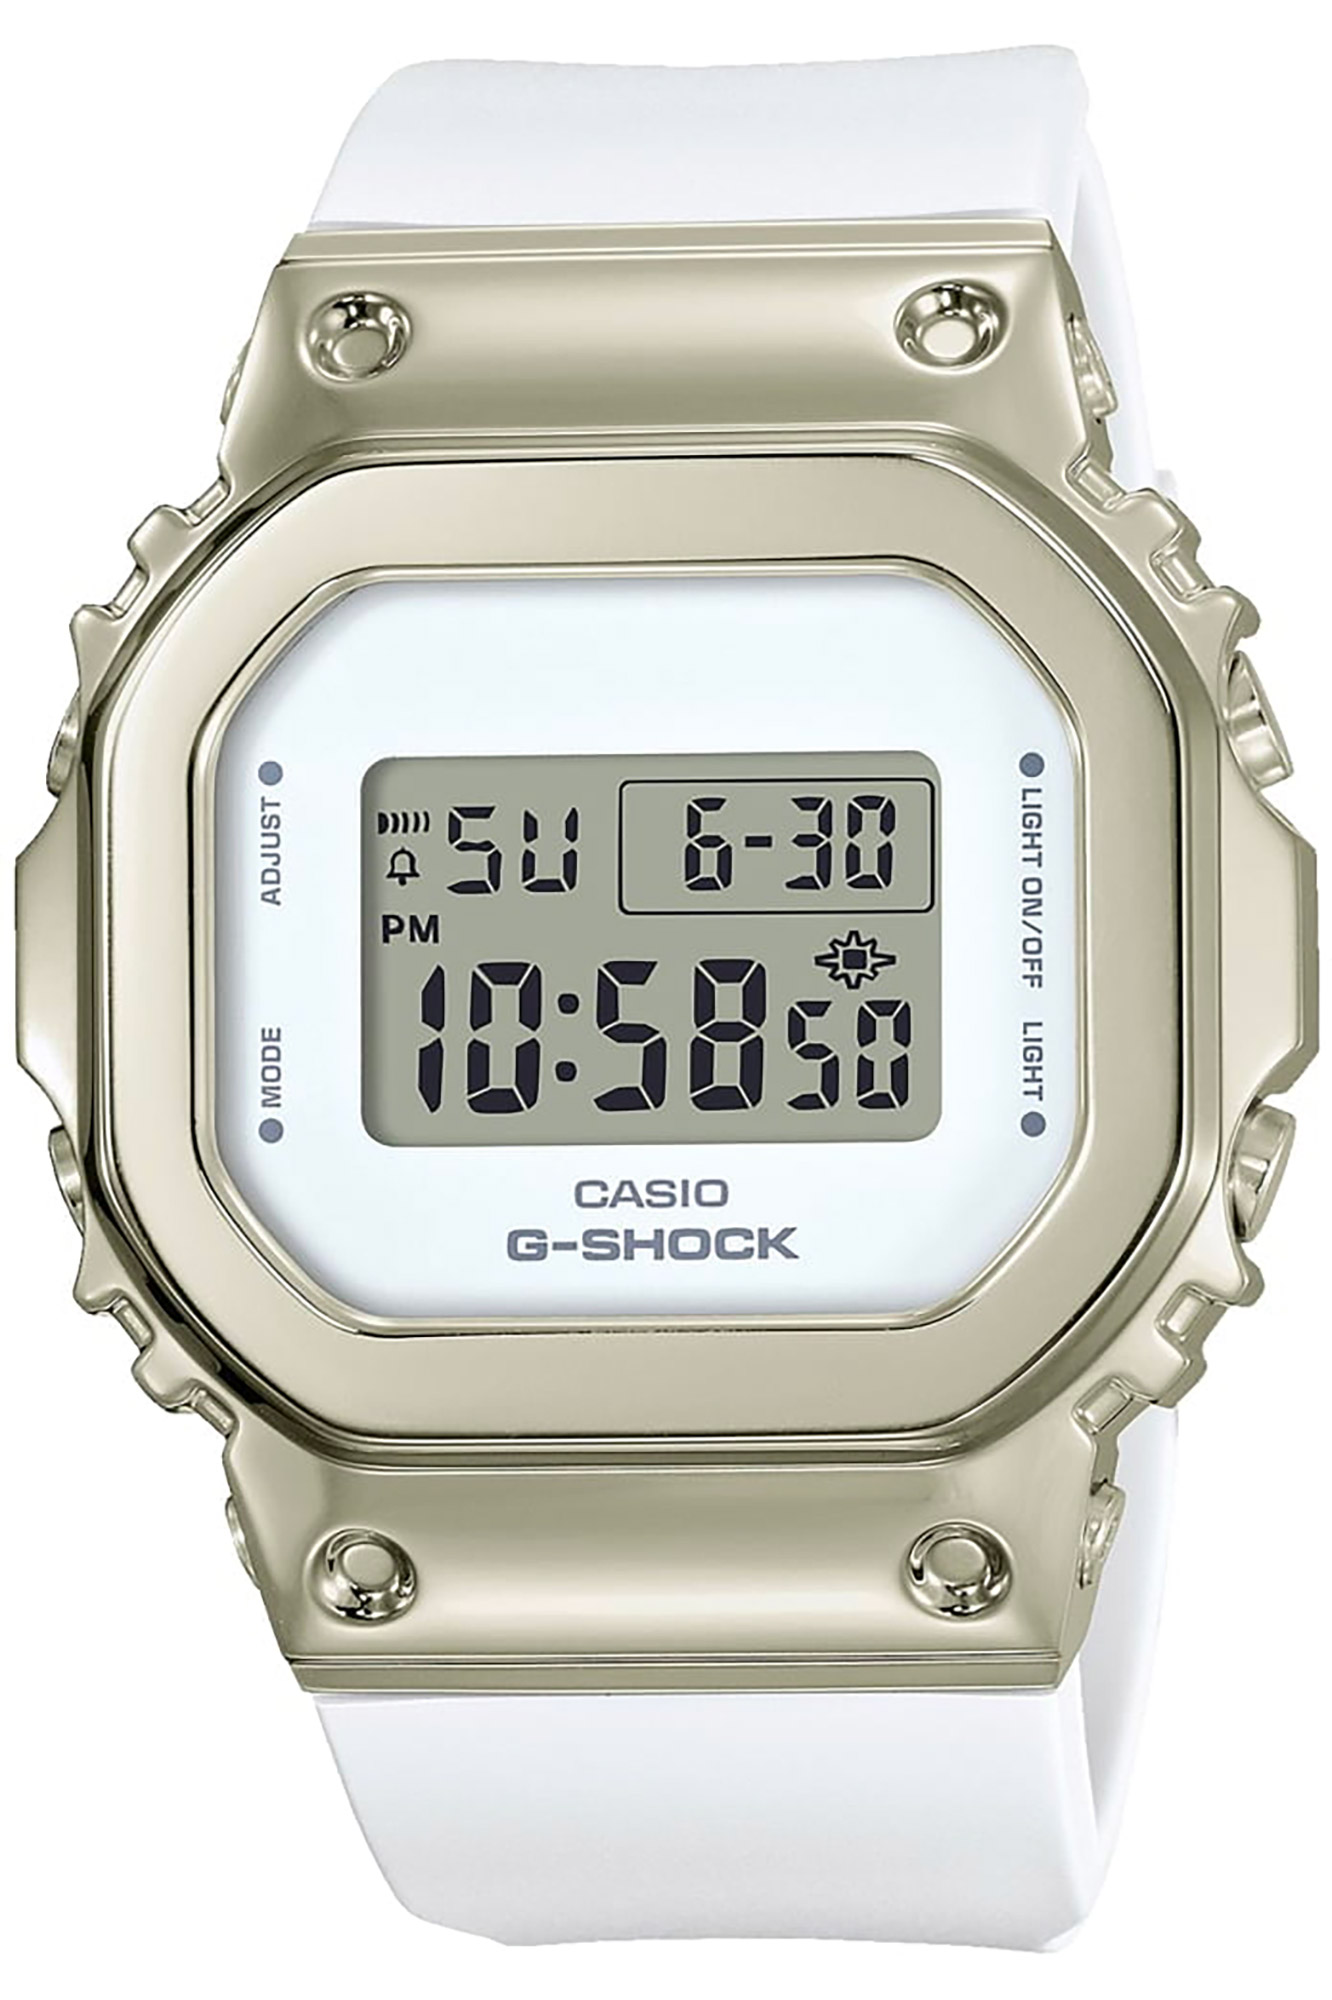 Watch CASIO G-Shock gm-s5600g-7er